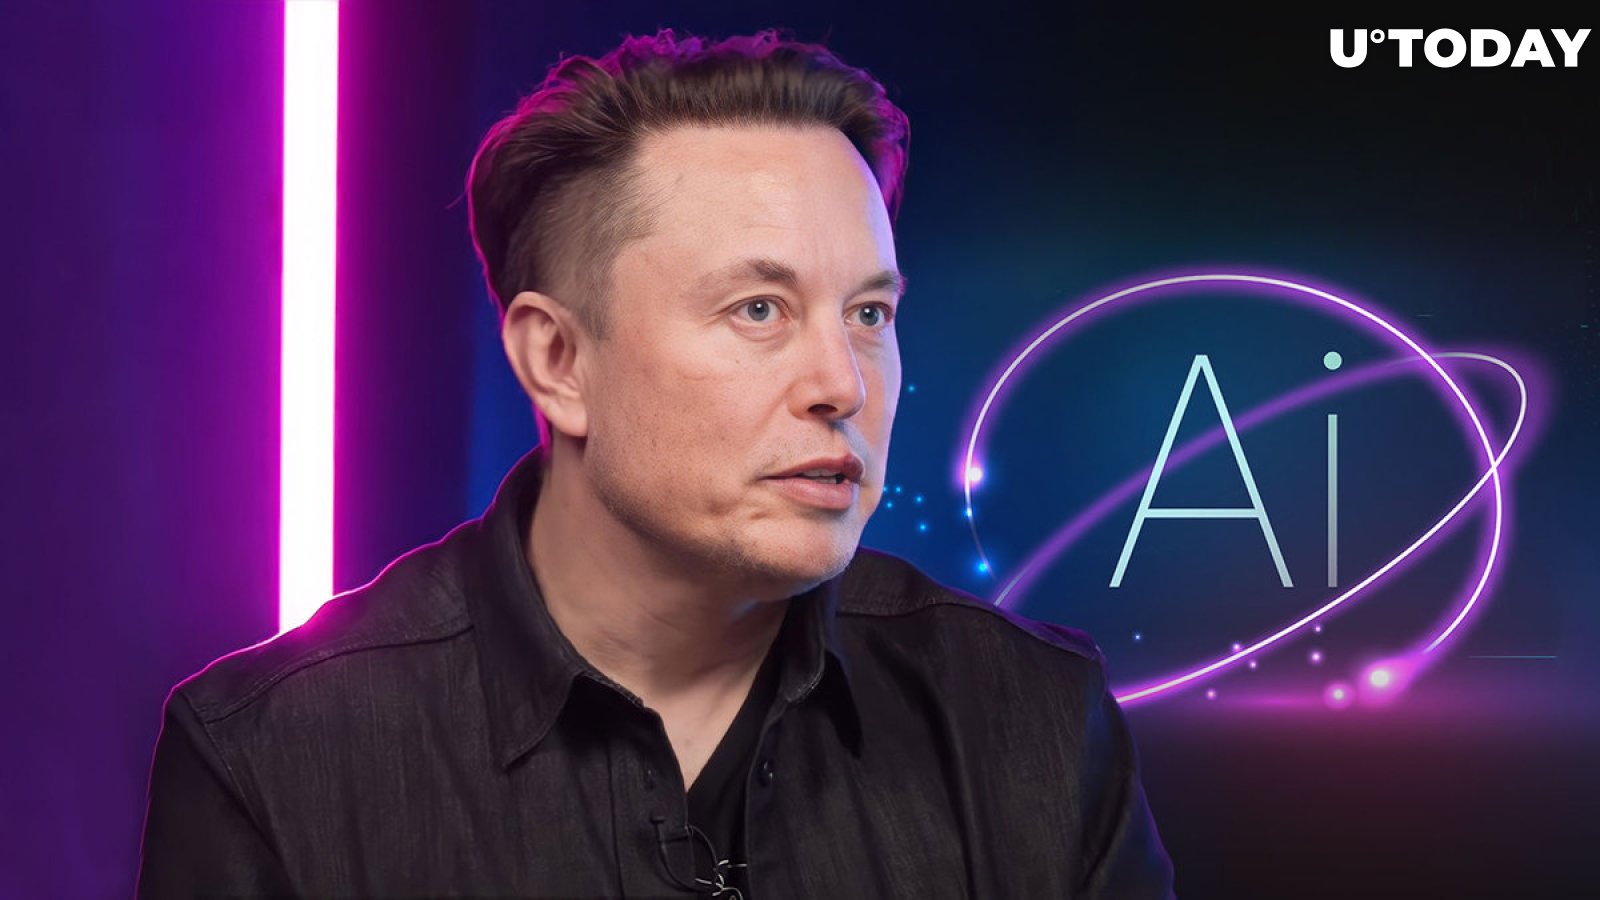 Elon Musk makes impressive AI prediction, hold tight